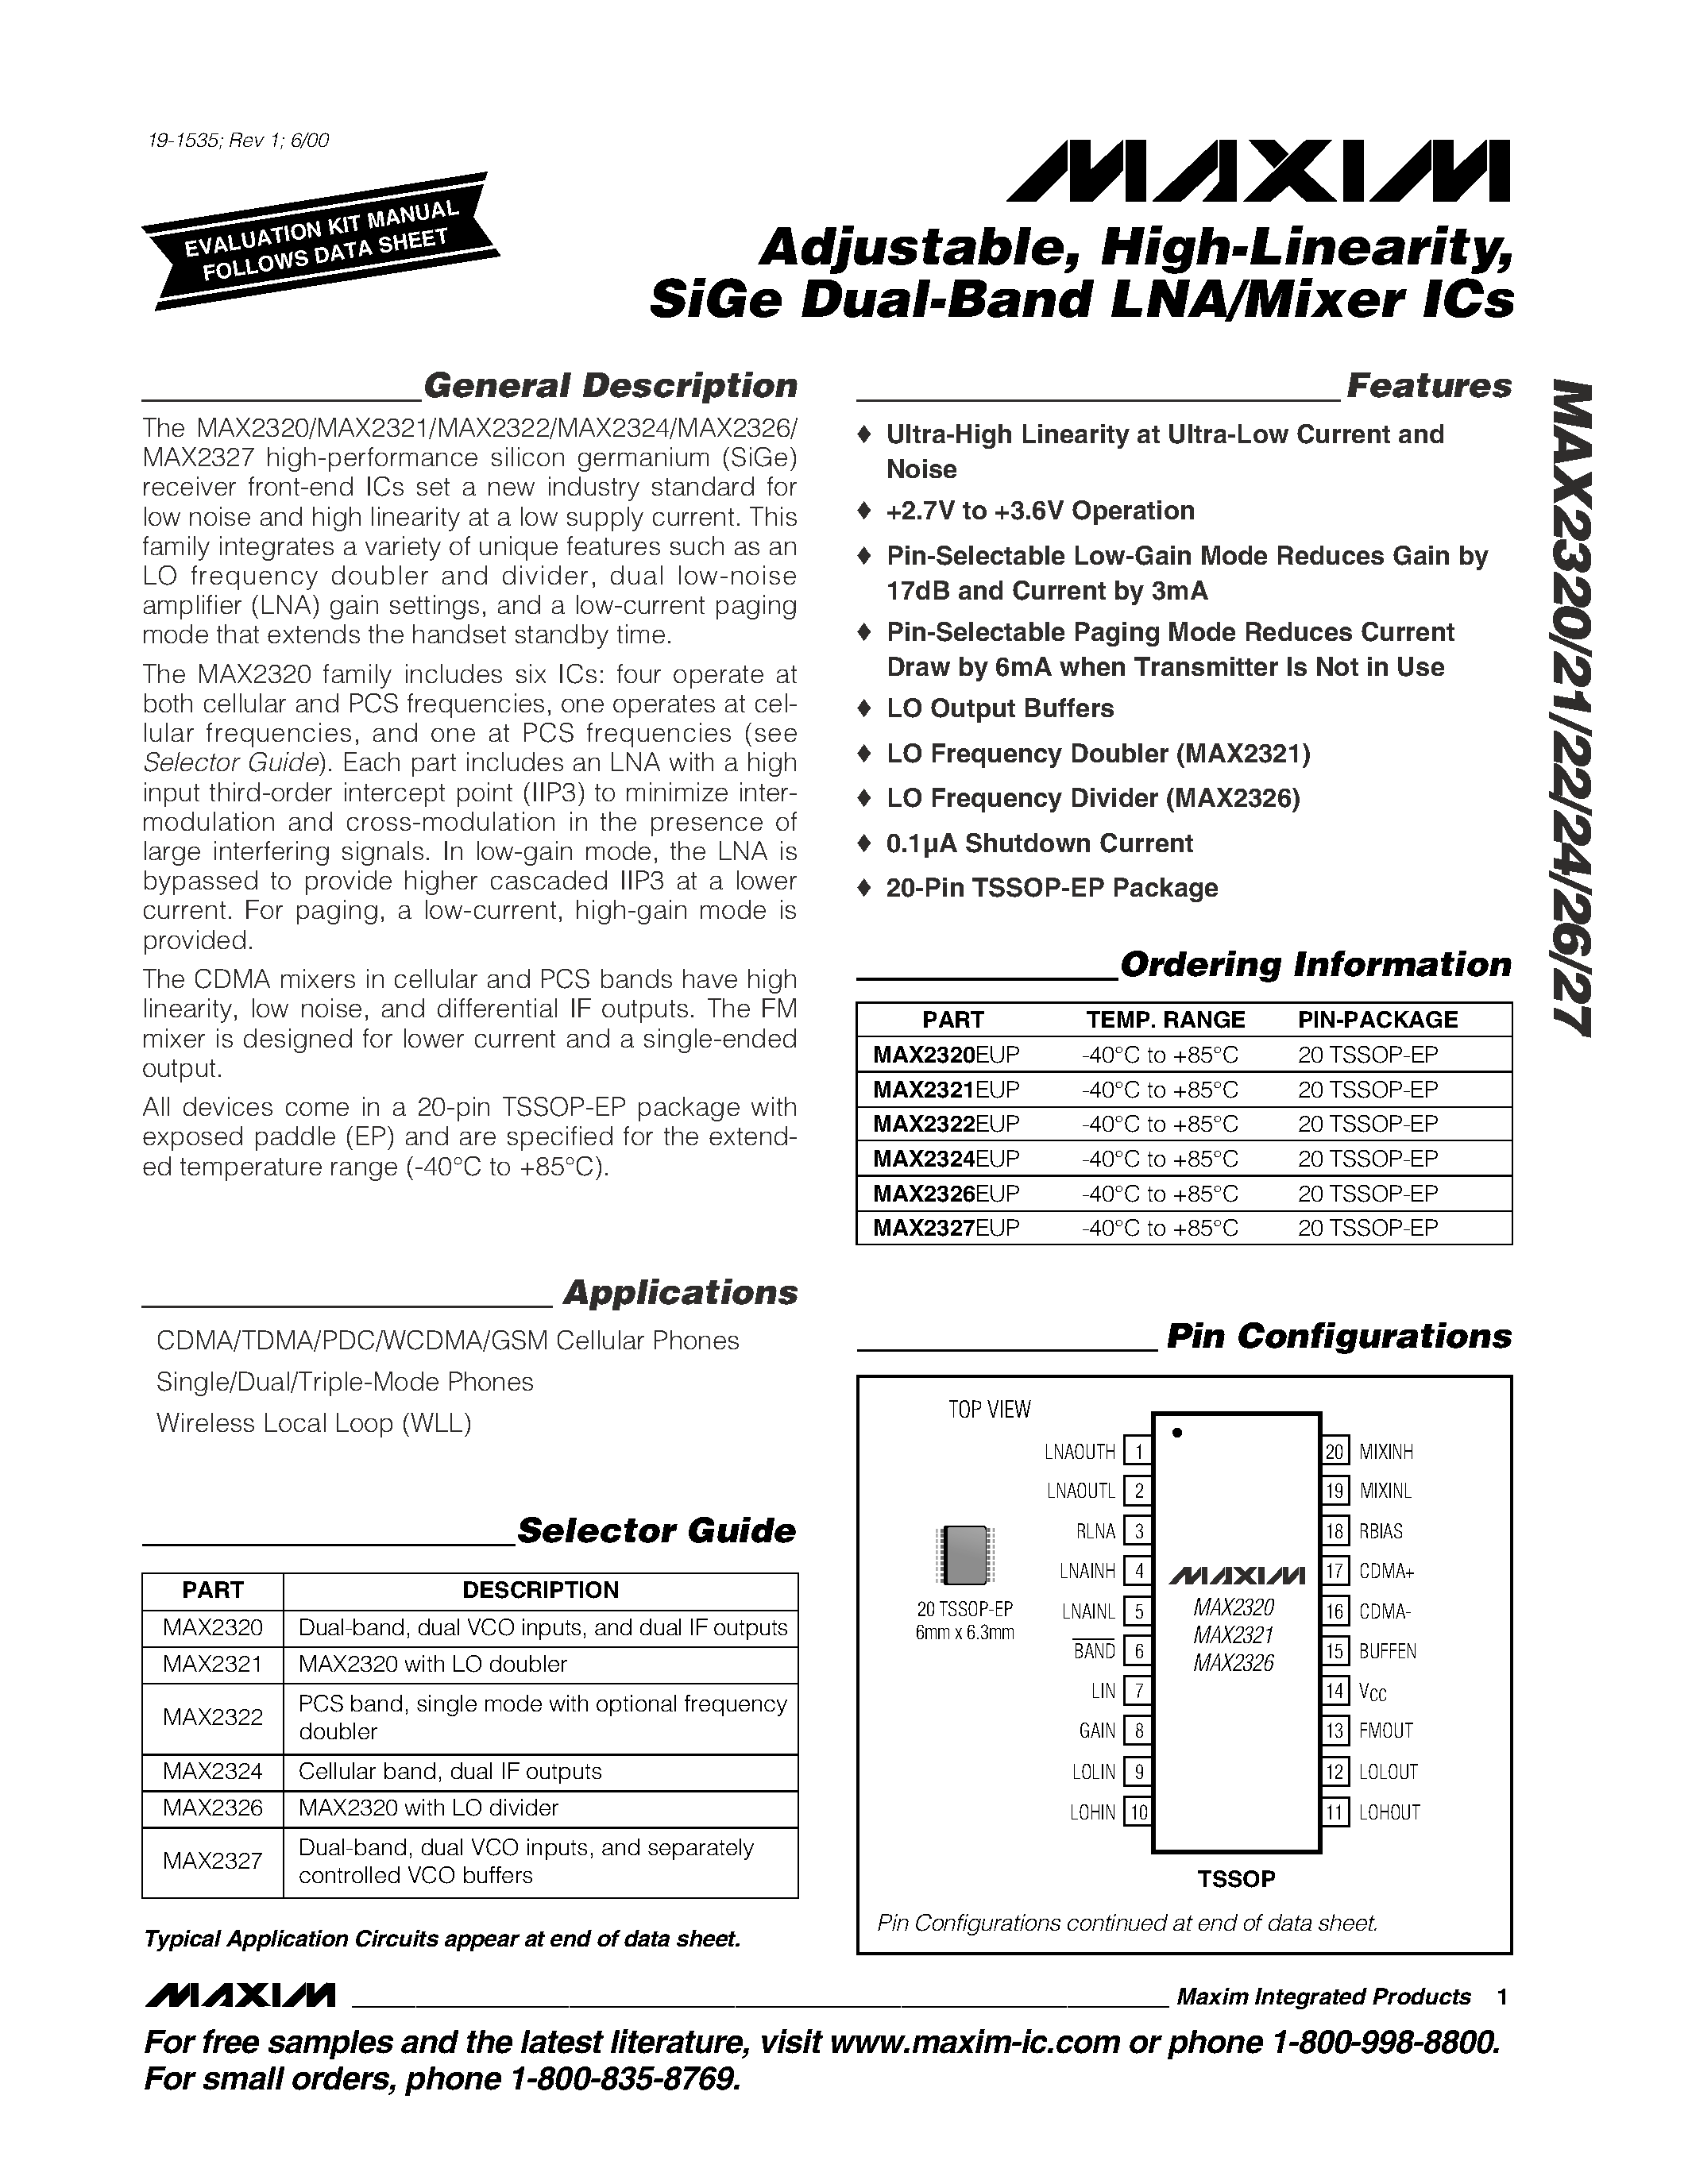 Даташит MAX2327EUP - Adjustable / High-Linearity / SiGe Dual-Band LNA/Mixer ICs страница 1